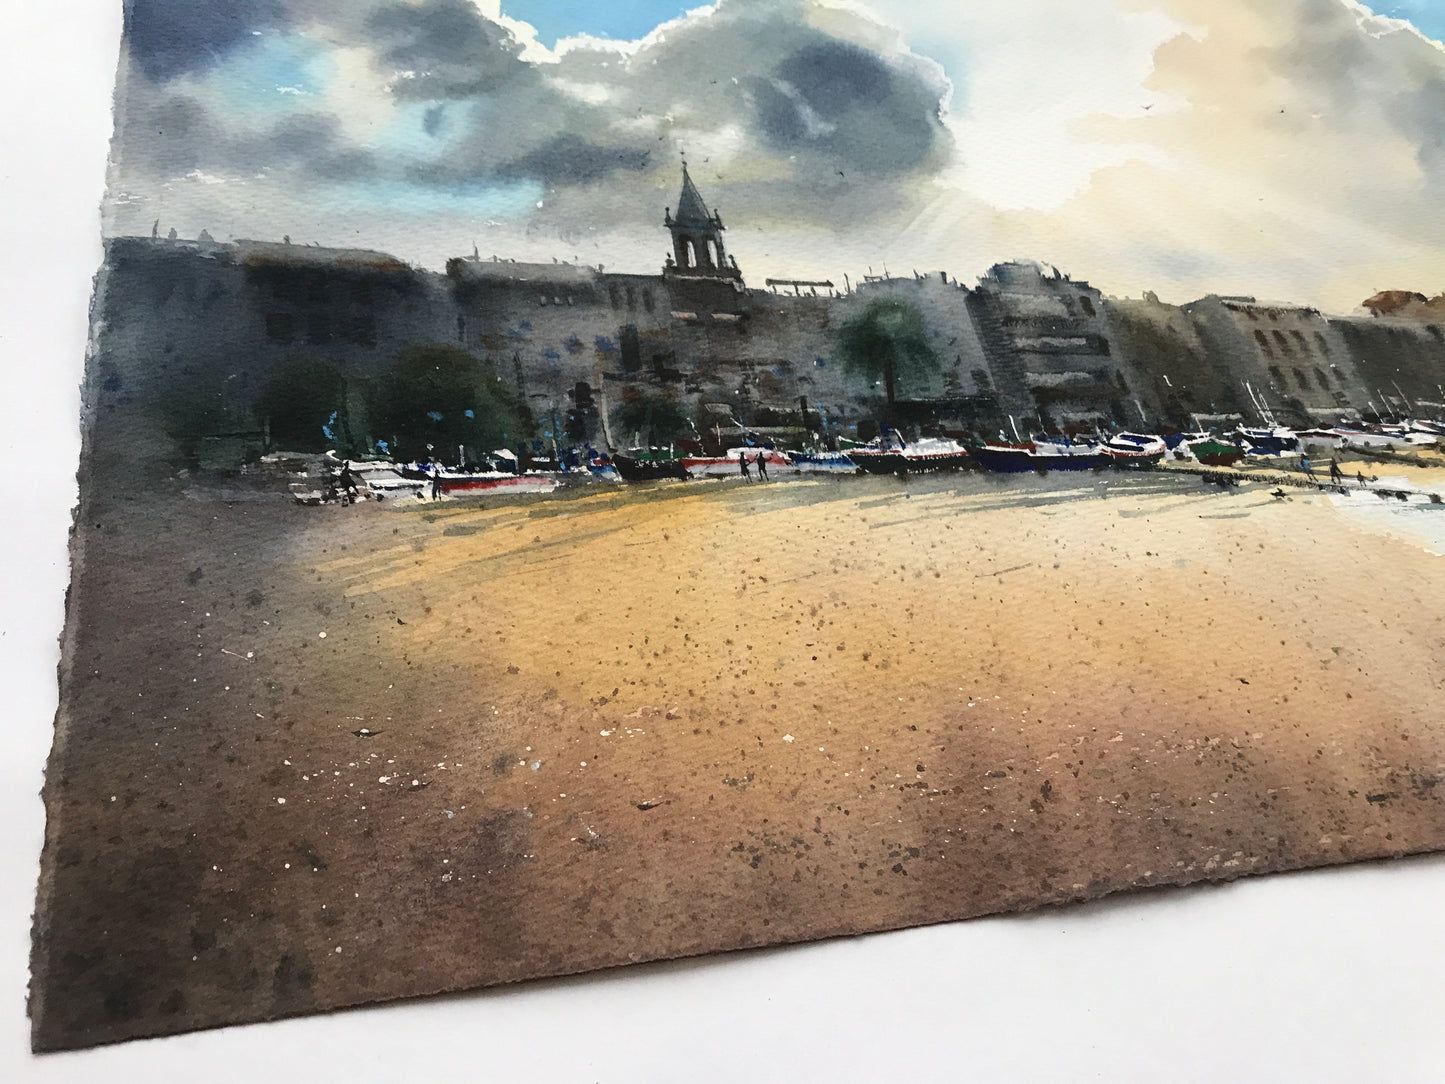 Painting Watercolor Original Artwork - Beach in Palamos - 22x15 in